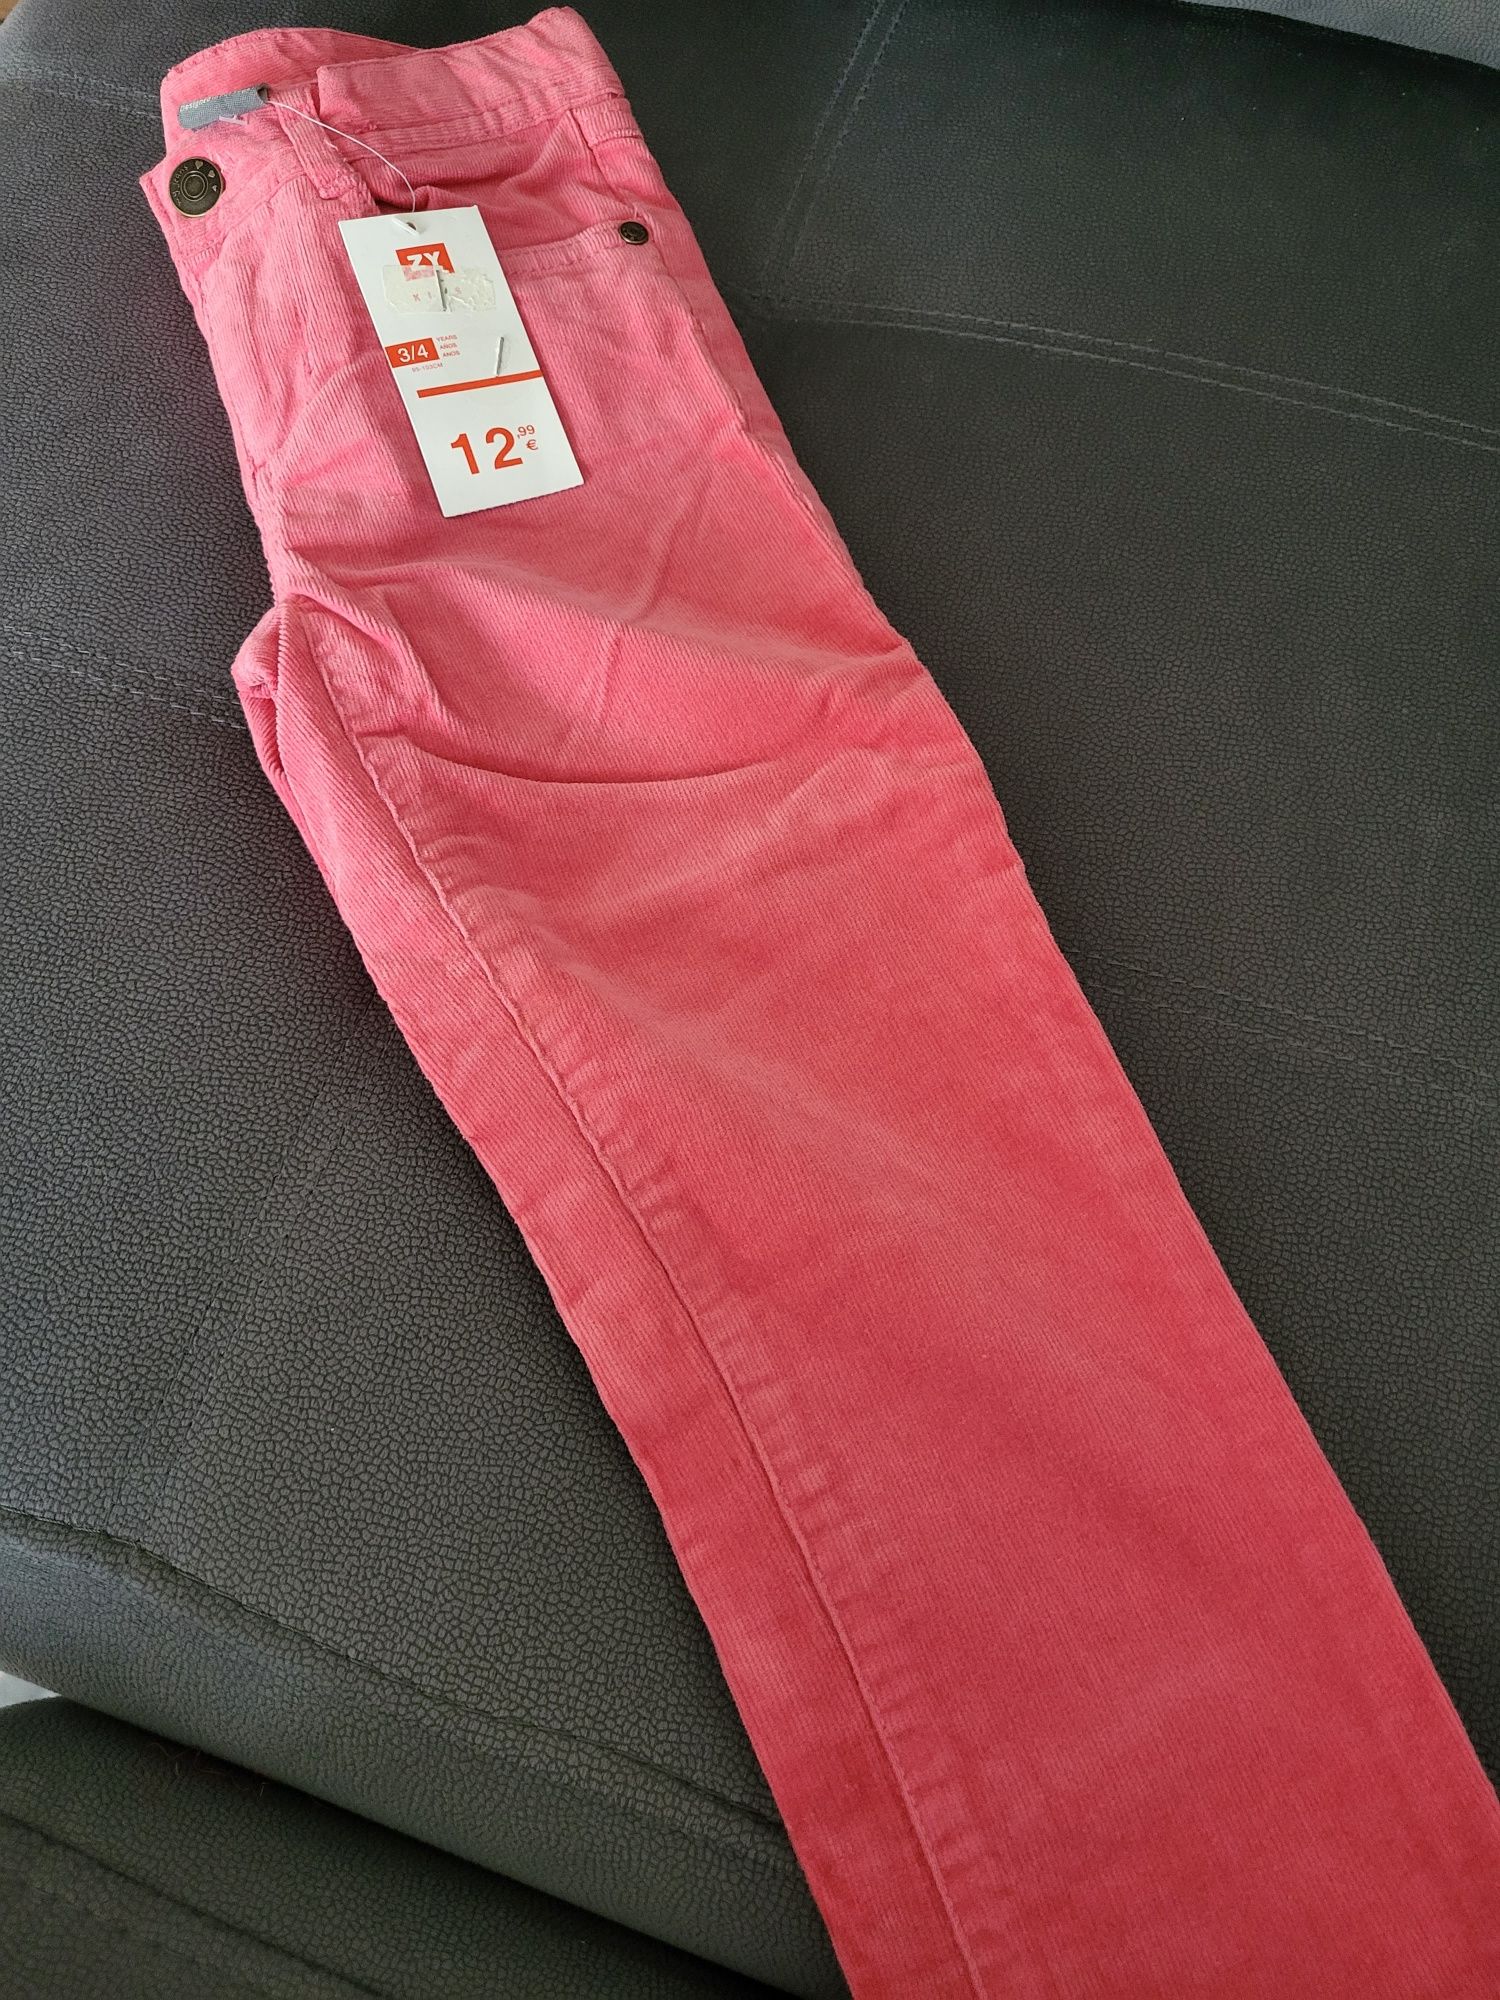 Calças rosas de ganga veludo " Zippy"-Tamanho 3/4 anos